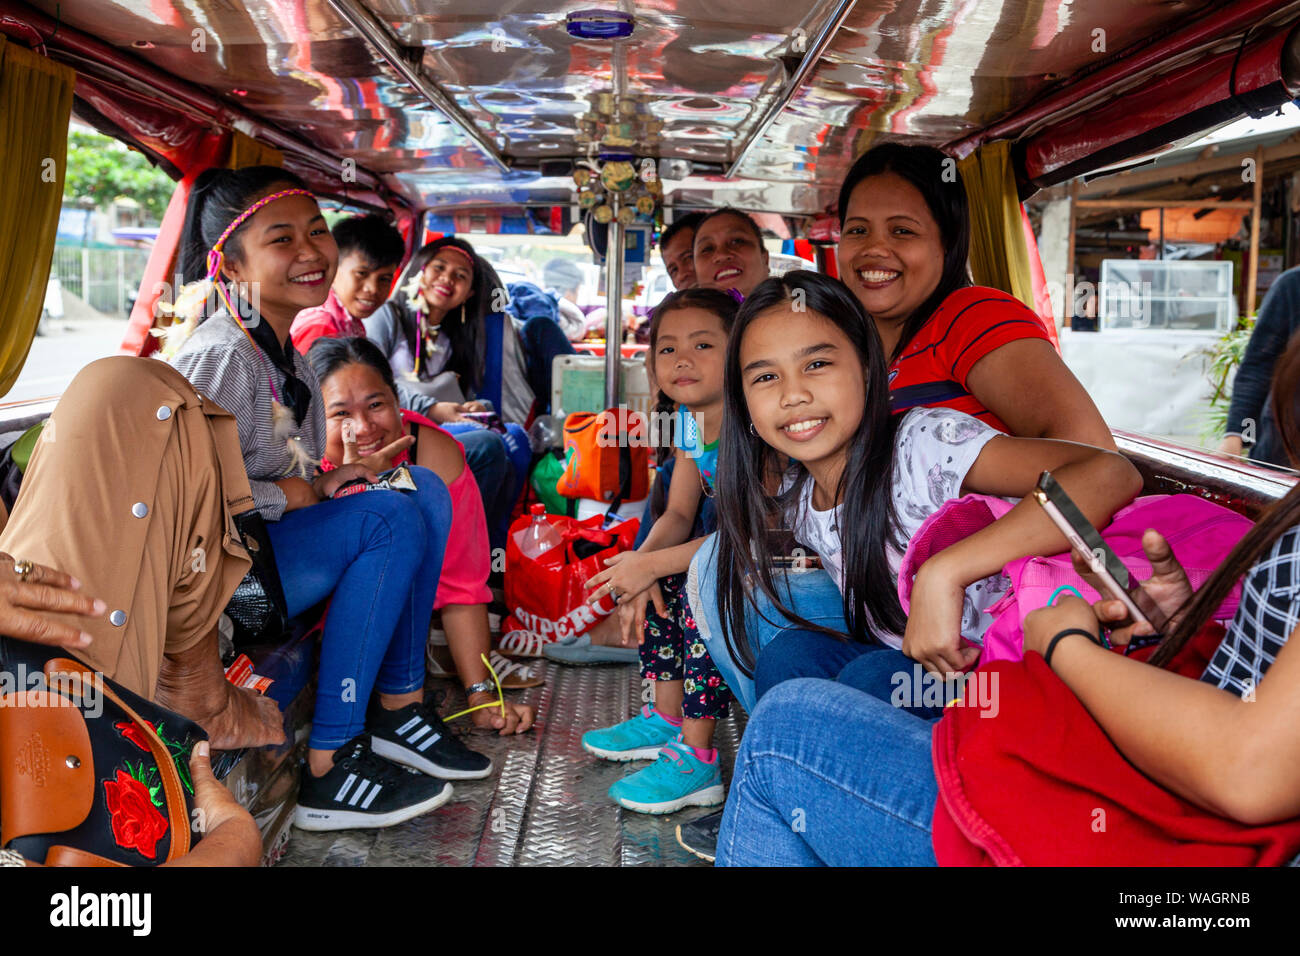 Felice il popolo filippino seduta all'interno di un Jeepney in attesa di partire, Kalibo, Panay Island, Aklan Provincia delle Filippine. Foto Stock